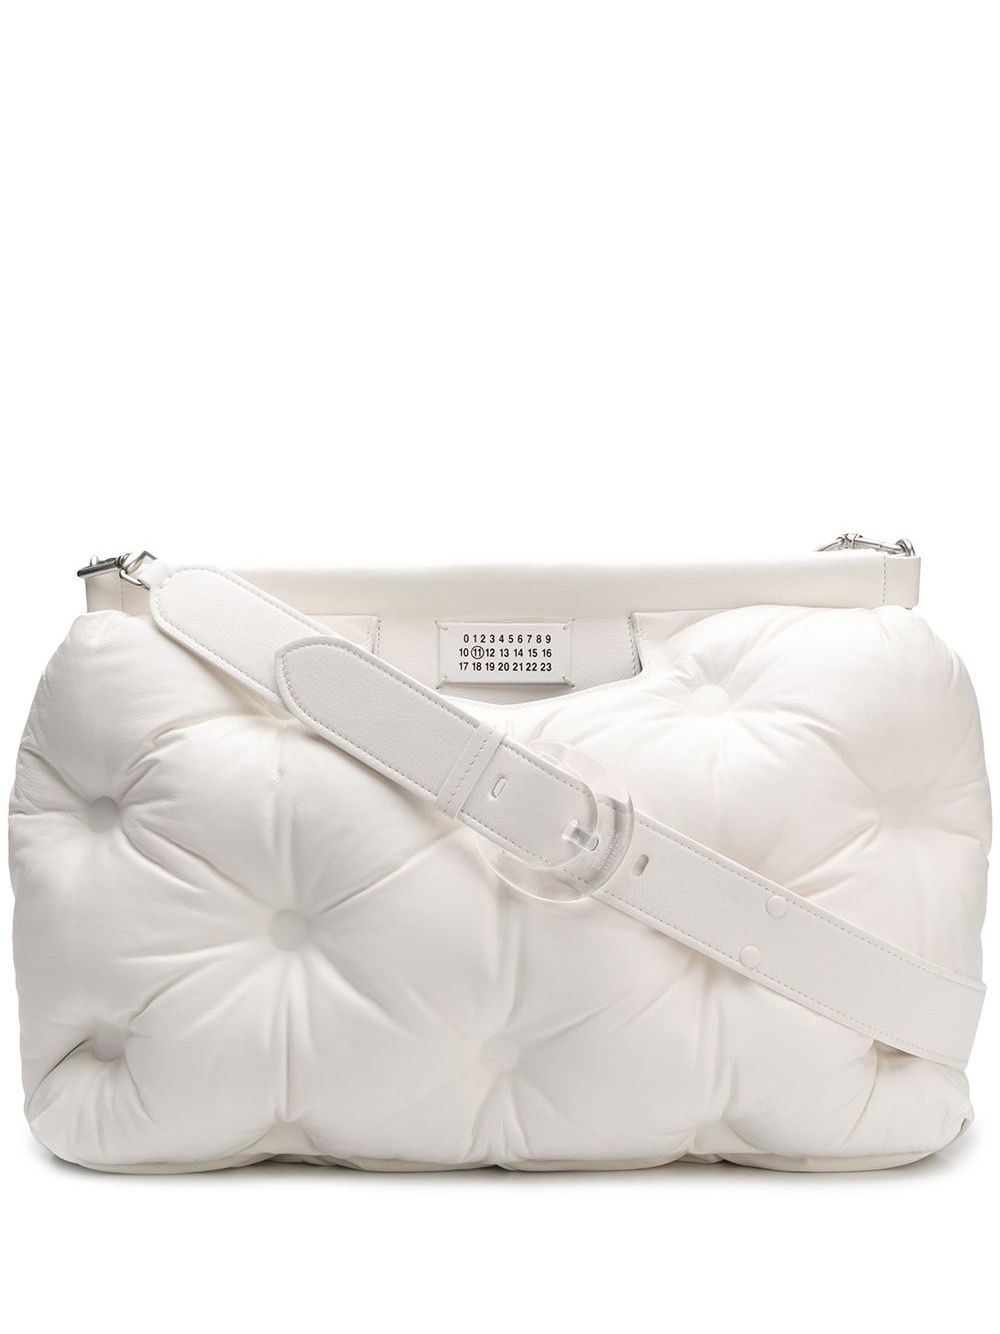 Pillow Purse Trend 2020: Marc Jacobs, Maison Margiela